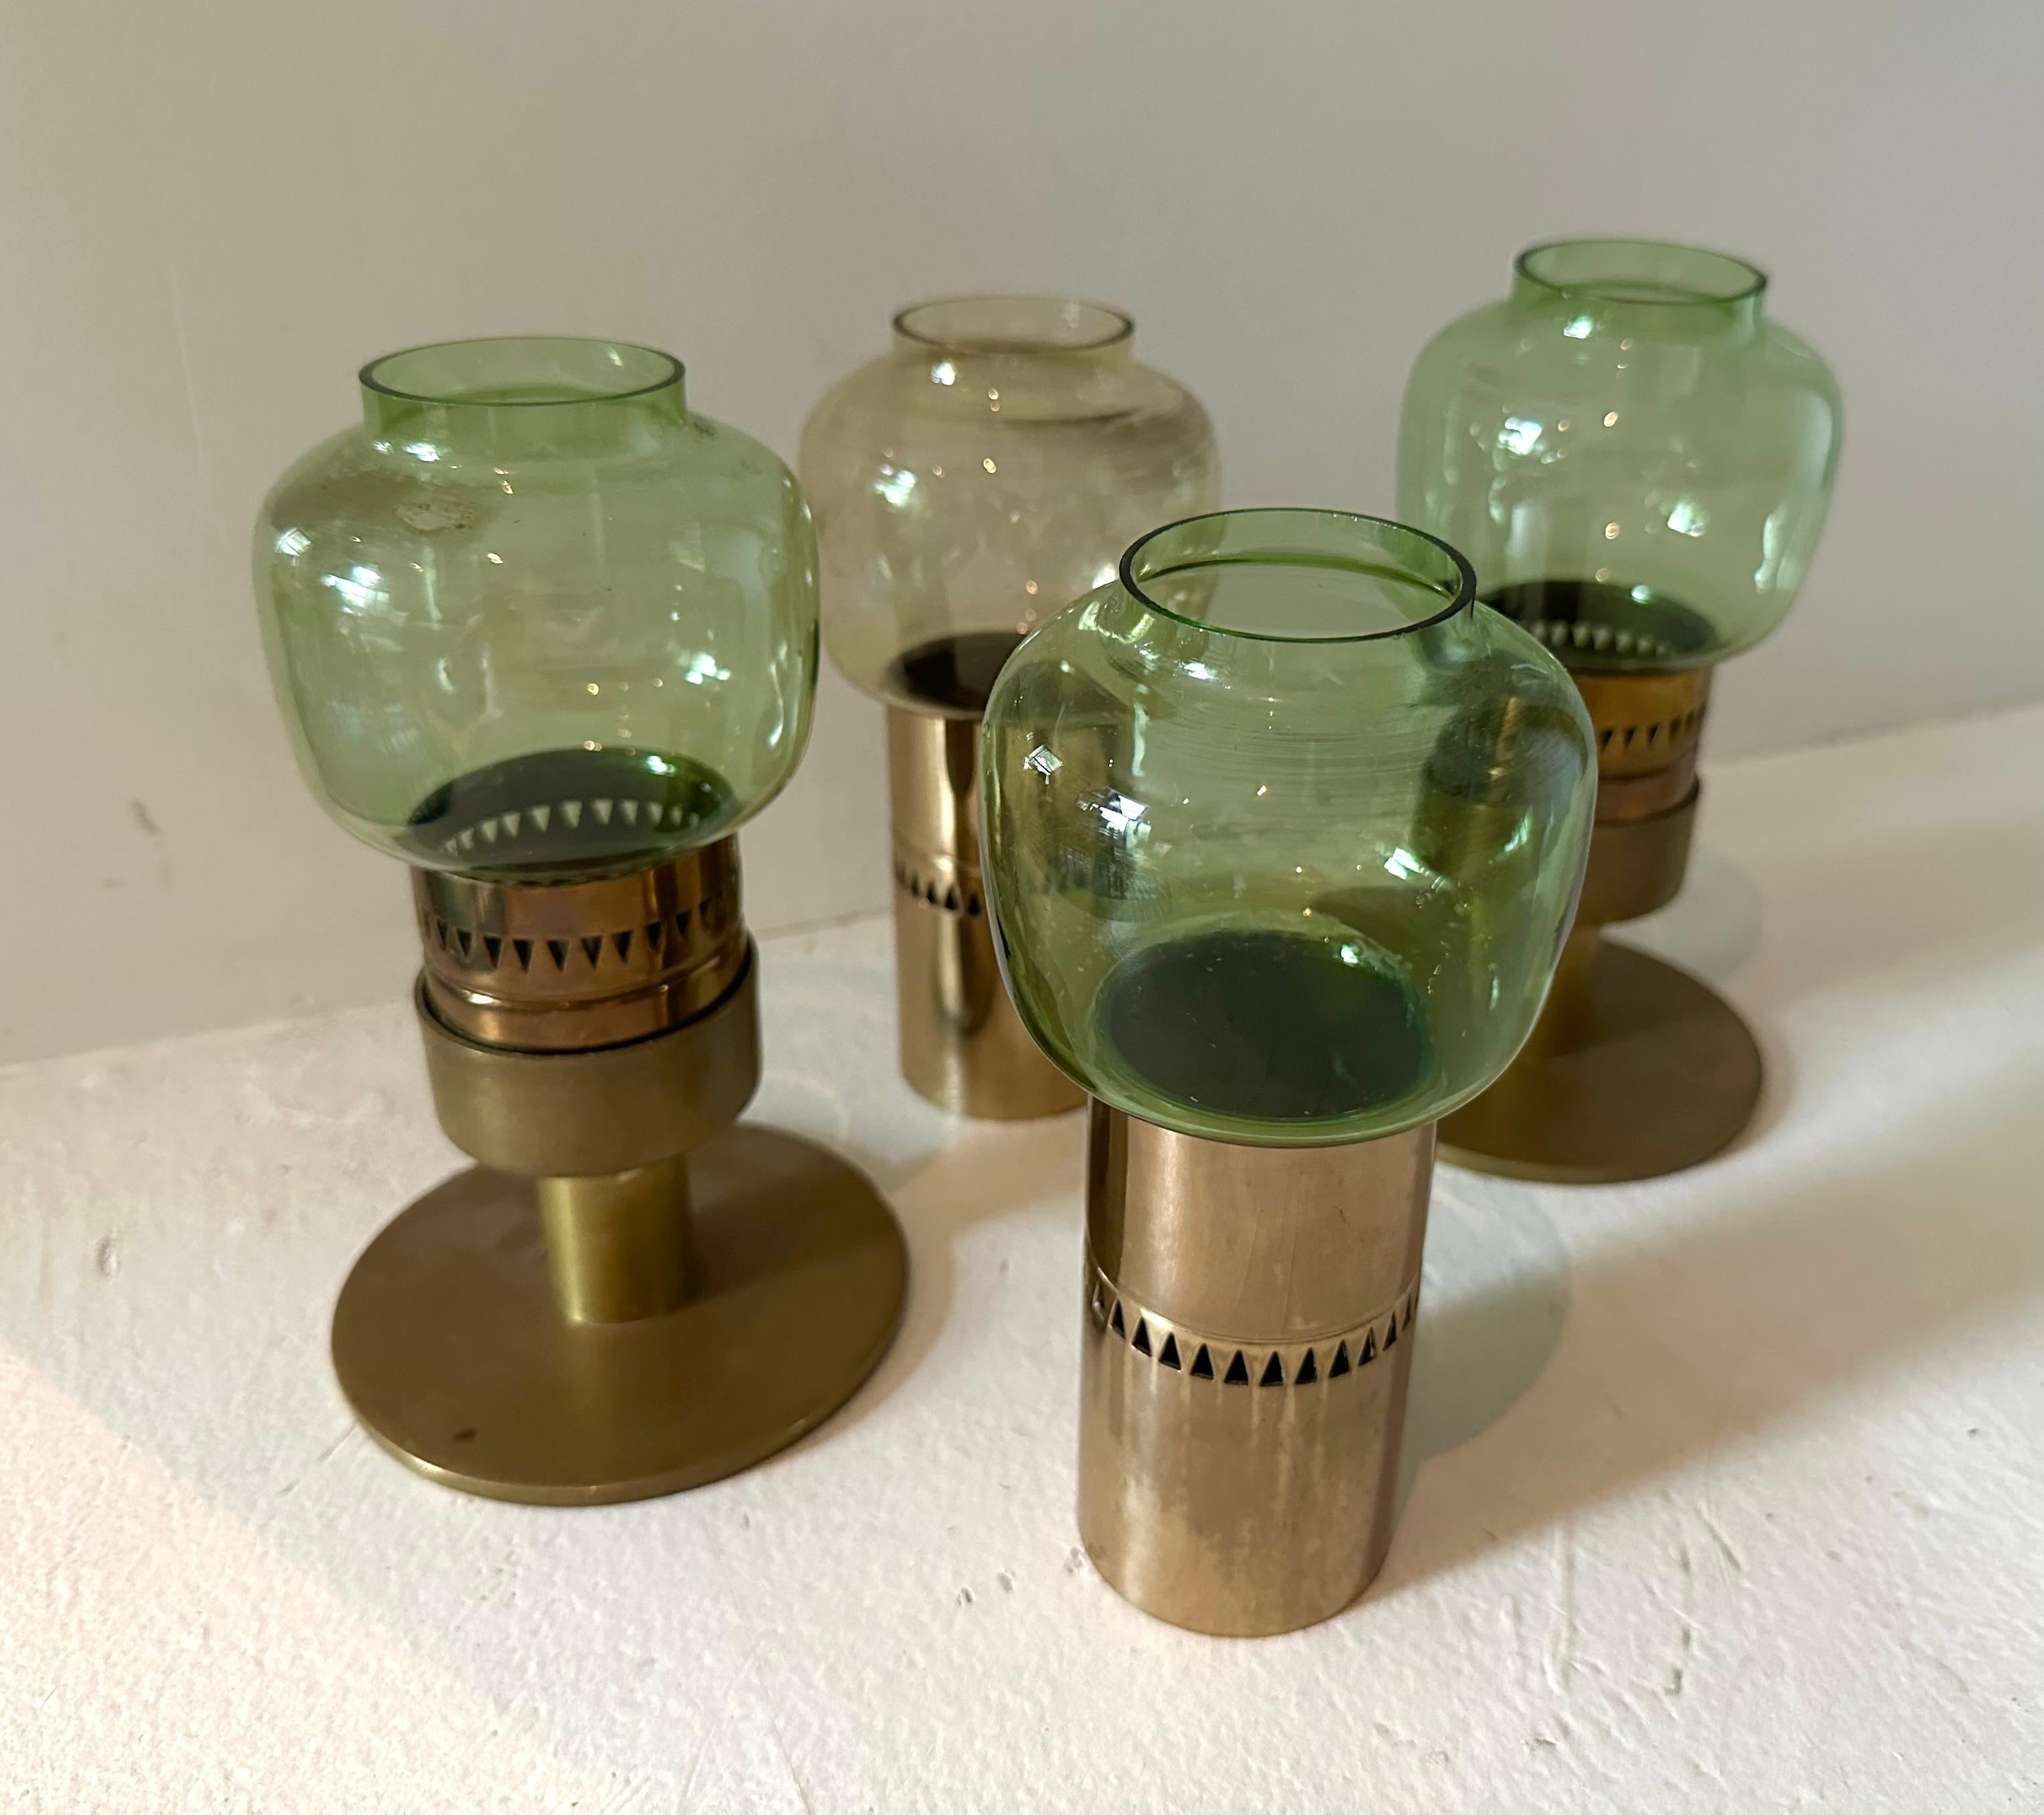 Vier Votivkerzenhalter mit grün getönten Glasschirmen. Kann eine kleine Stadtlandschaft bilden oder einzeln verwendet werden. Geätzte Signatur auf Glas